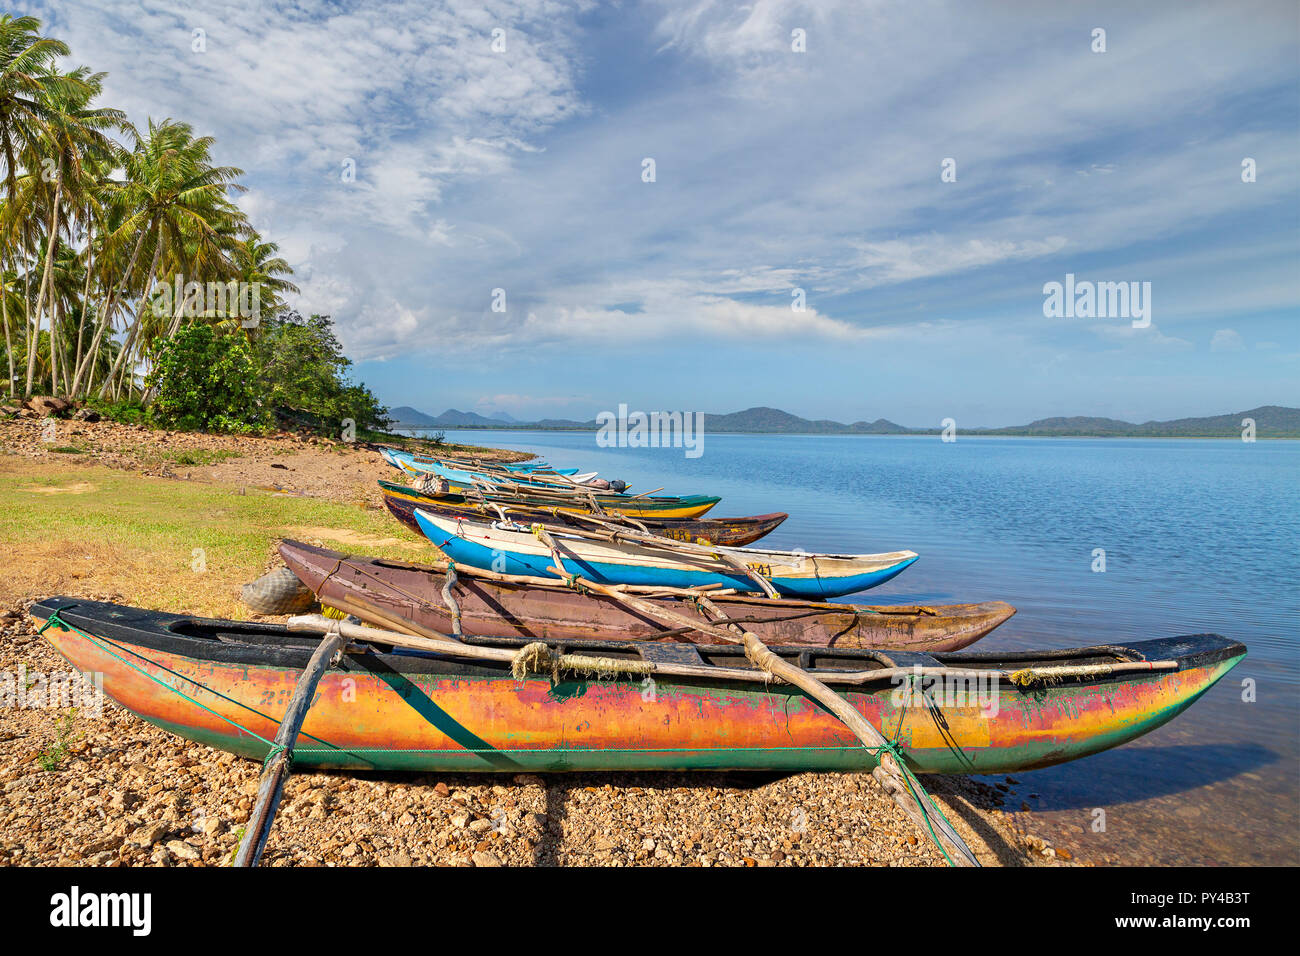 Catamaran fishing boats in Sri Lanka Stock Photo